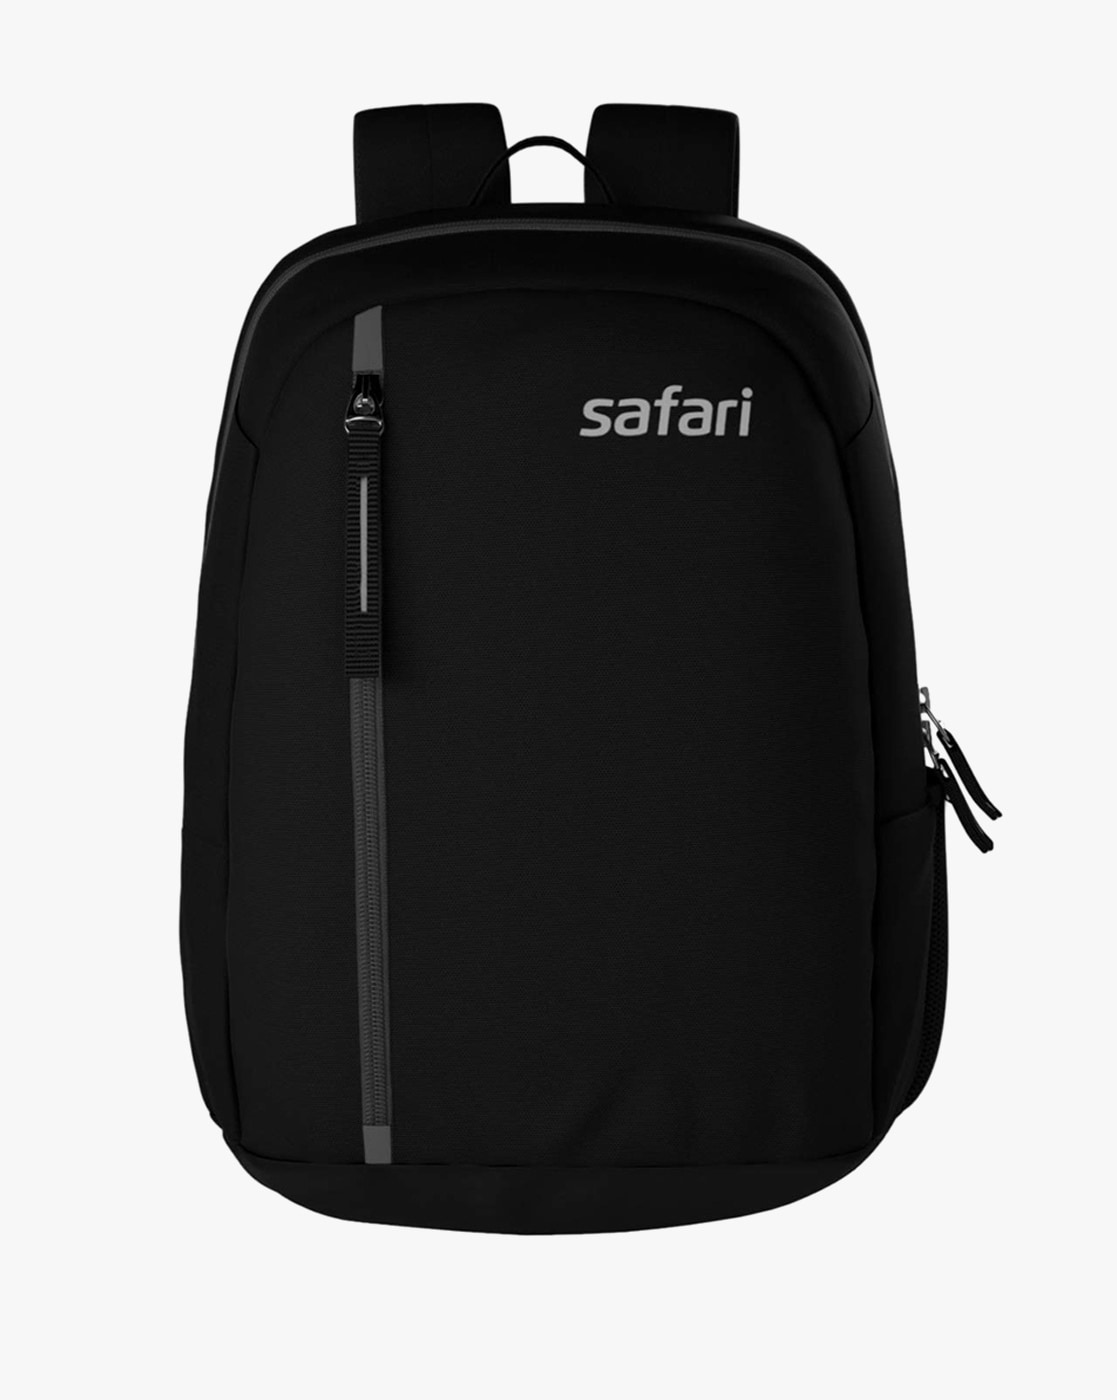 Safari DELTA Laptop Backpack in bulk for corporate gifting | Safari Backpack,  Haversack wholesale distributor & supplier in Mumbai India